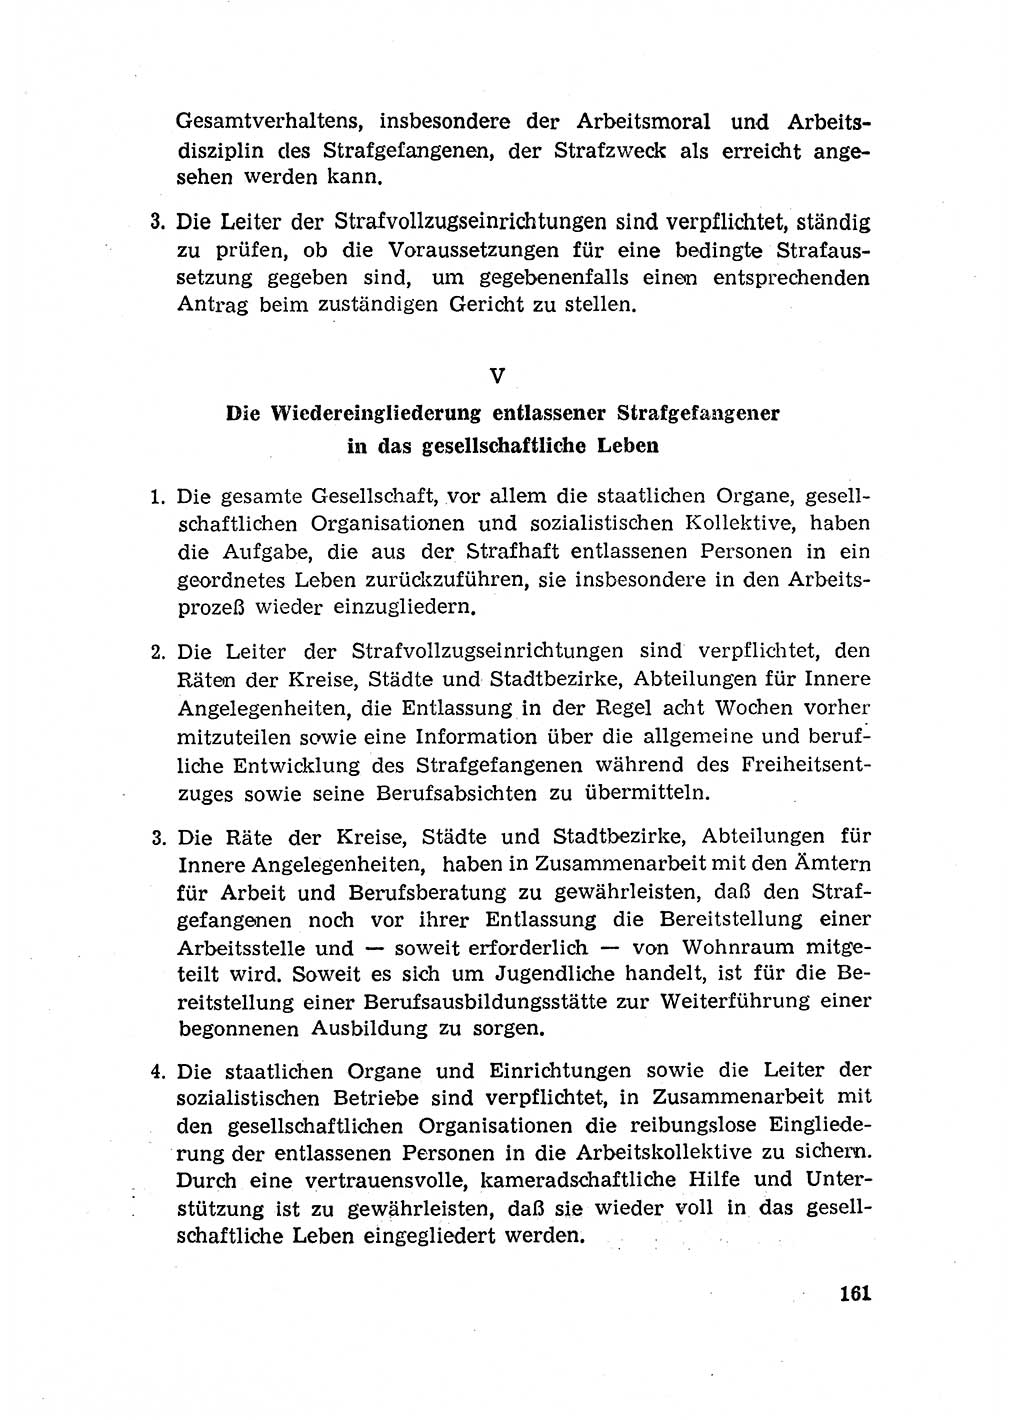 Rechtspflegeerlaß [Deutsche Demokratische Republik (DDR)] 1963, Seite 161 (R.-Pfl.-Erl. DDR 1963, S. 161)